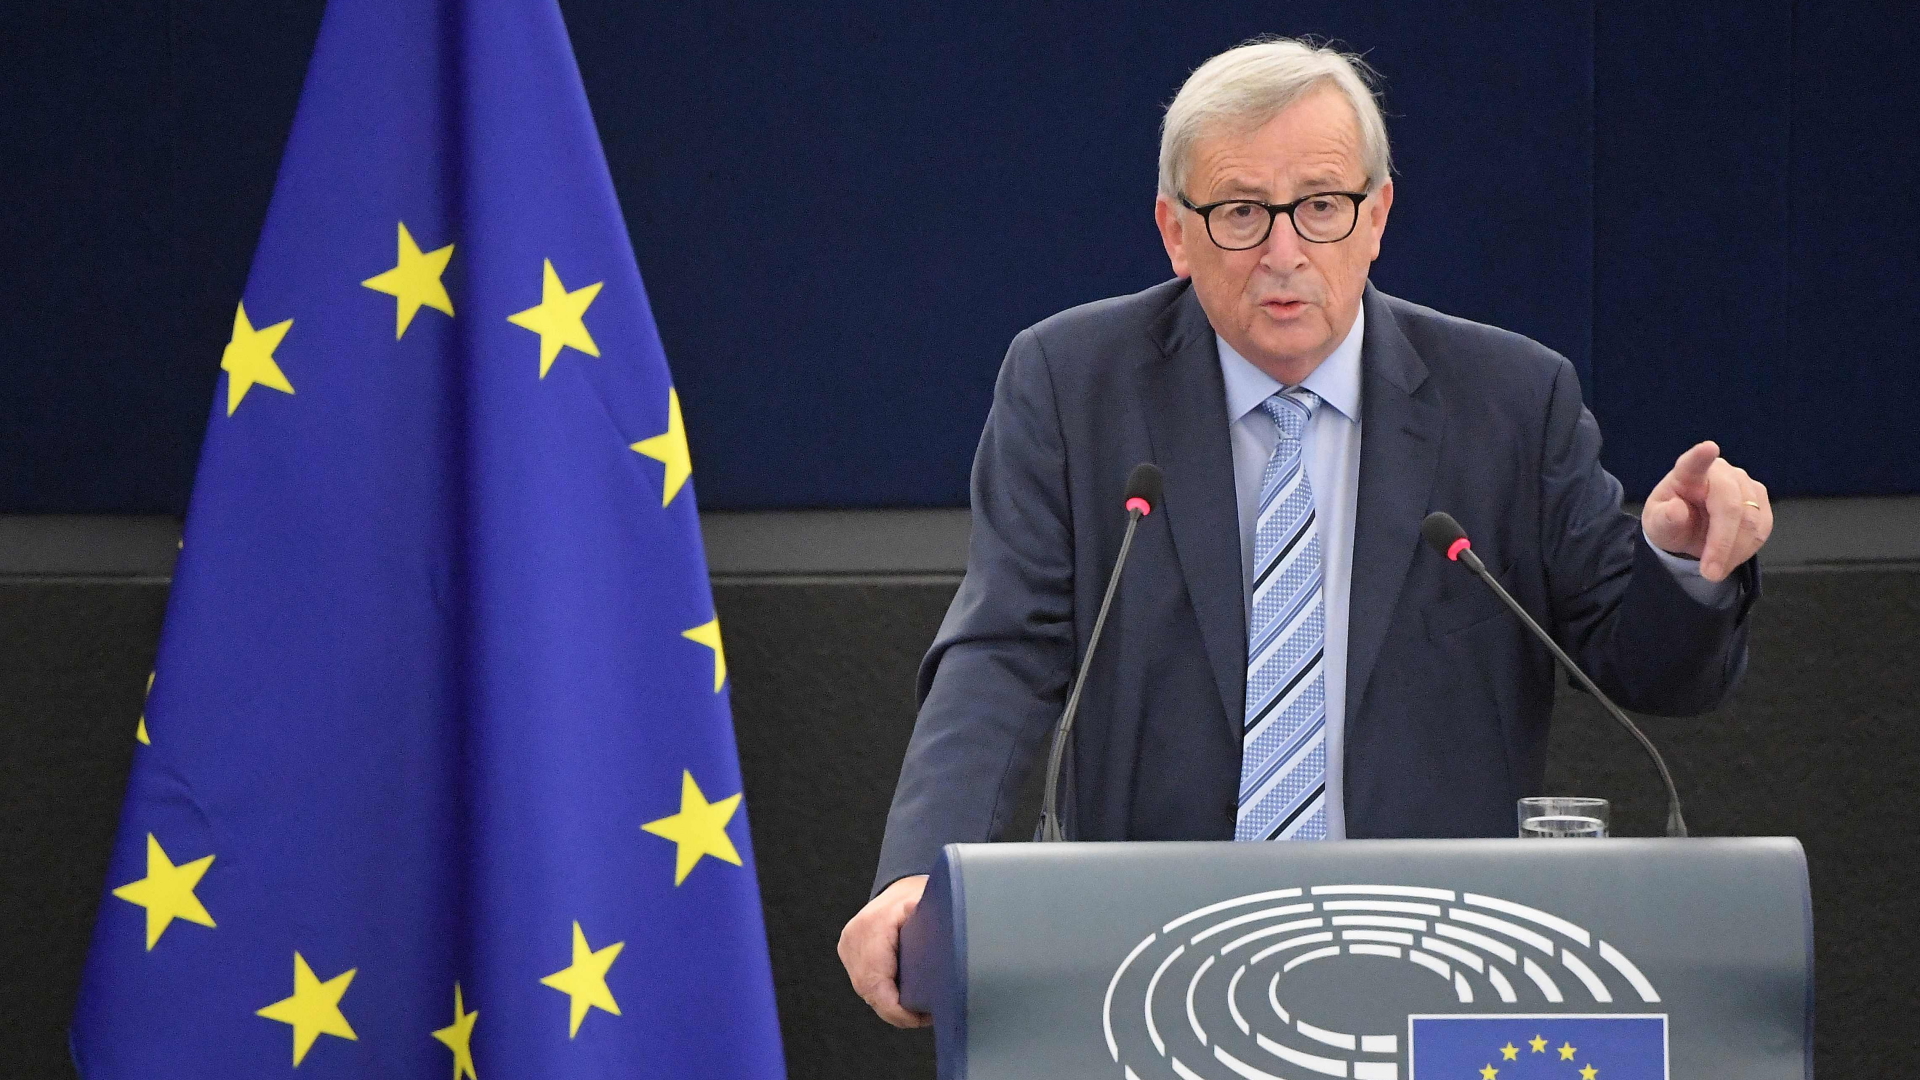 Der scheidende Präsident der Europäischen Kommission, Jean-Claude Juncker, hält seine Abschiedsrede im Europäischen Parlament in Straßburg.